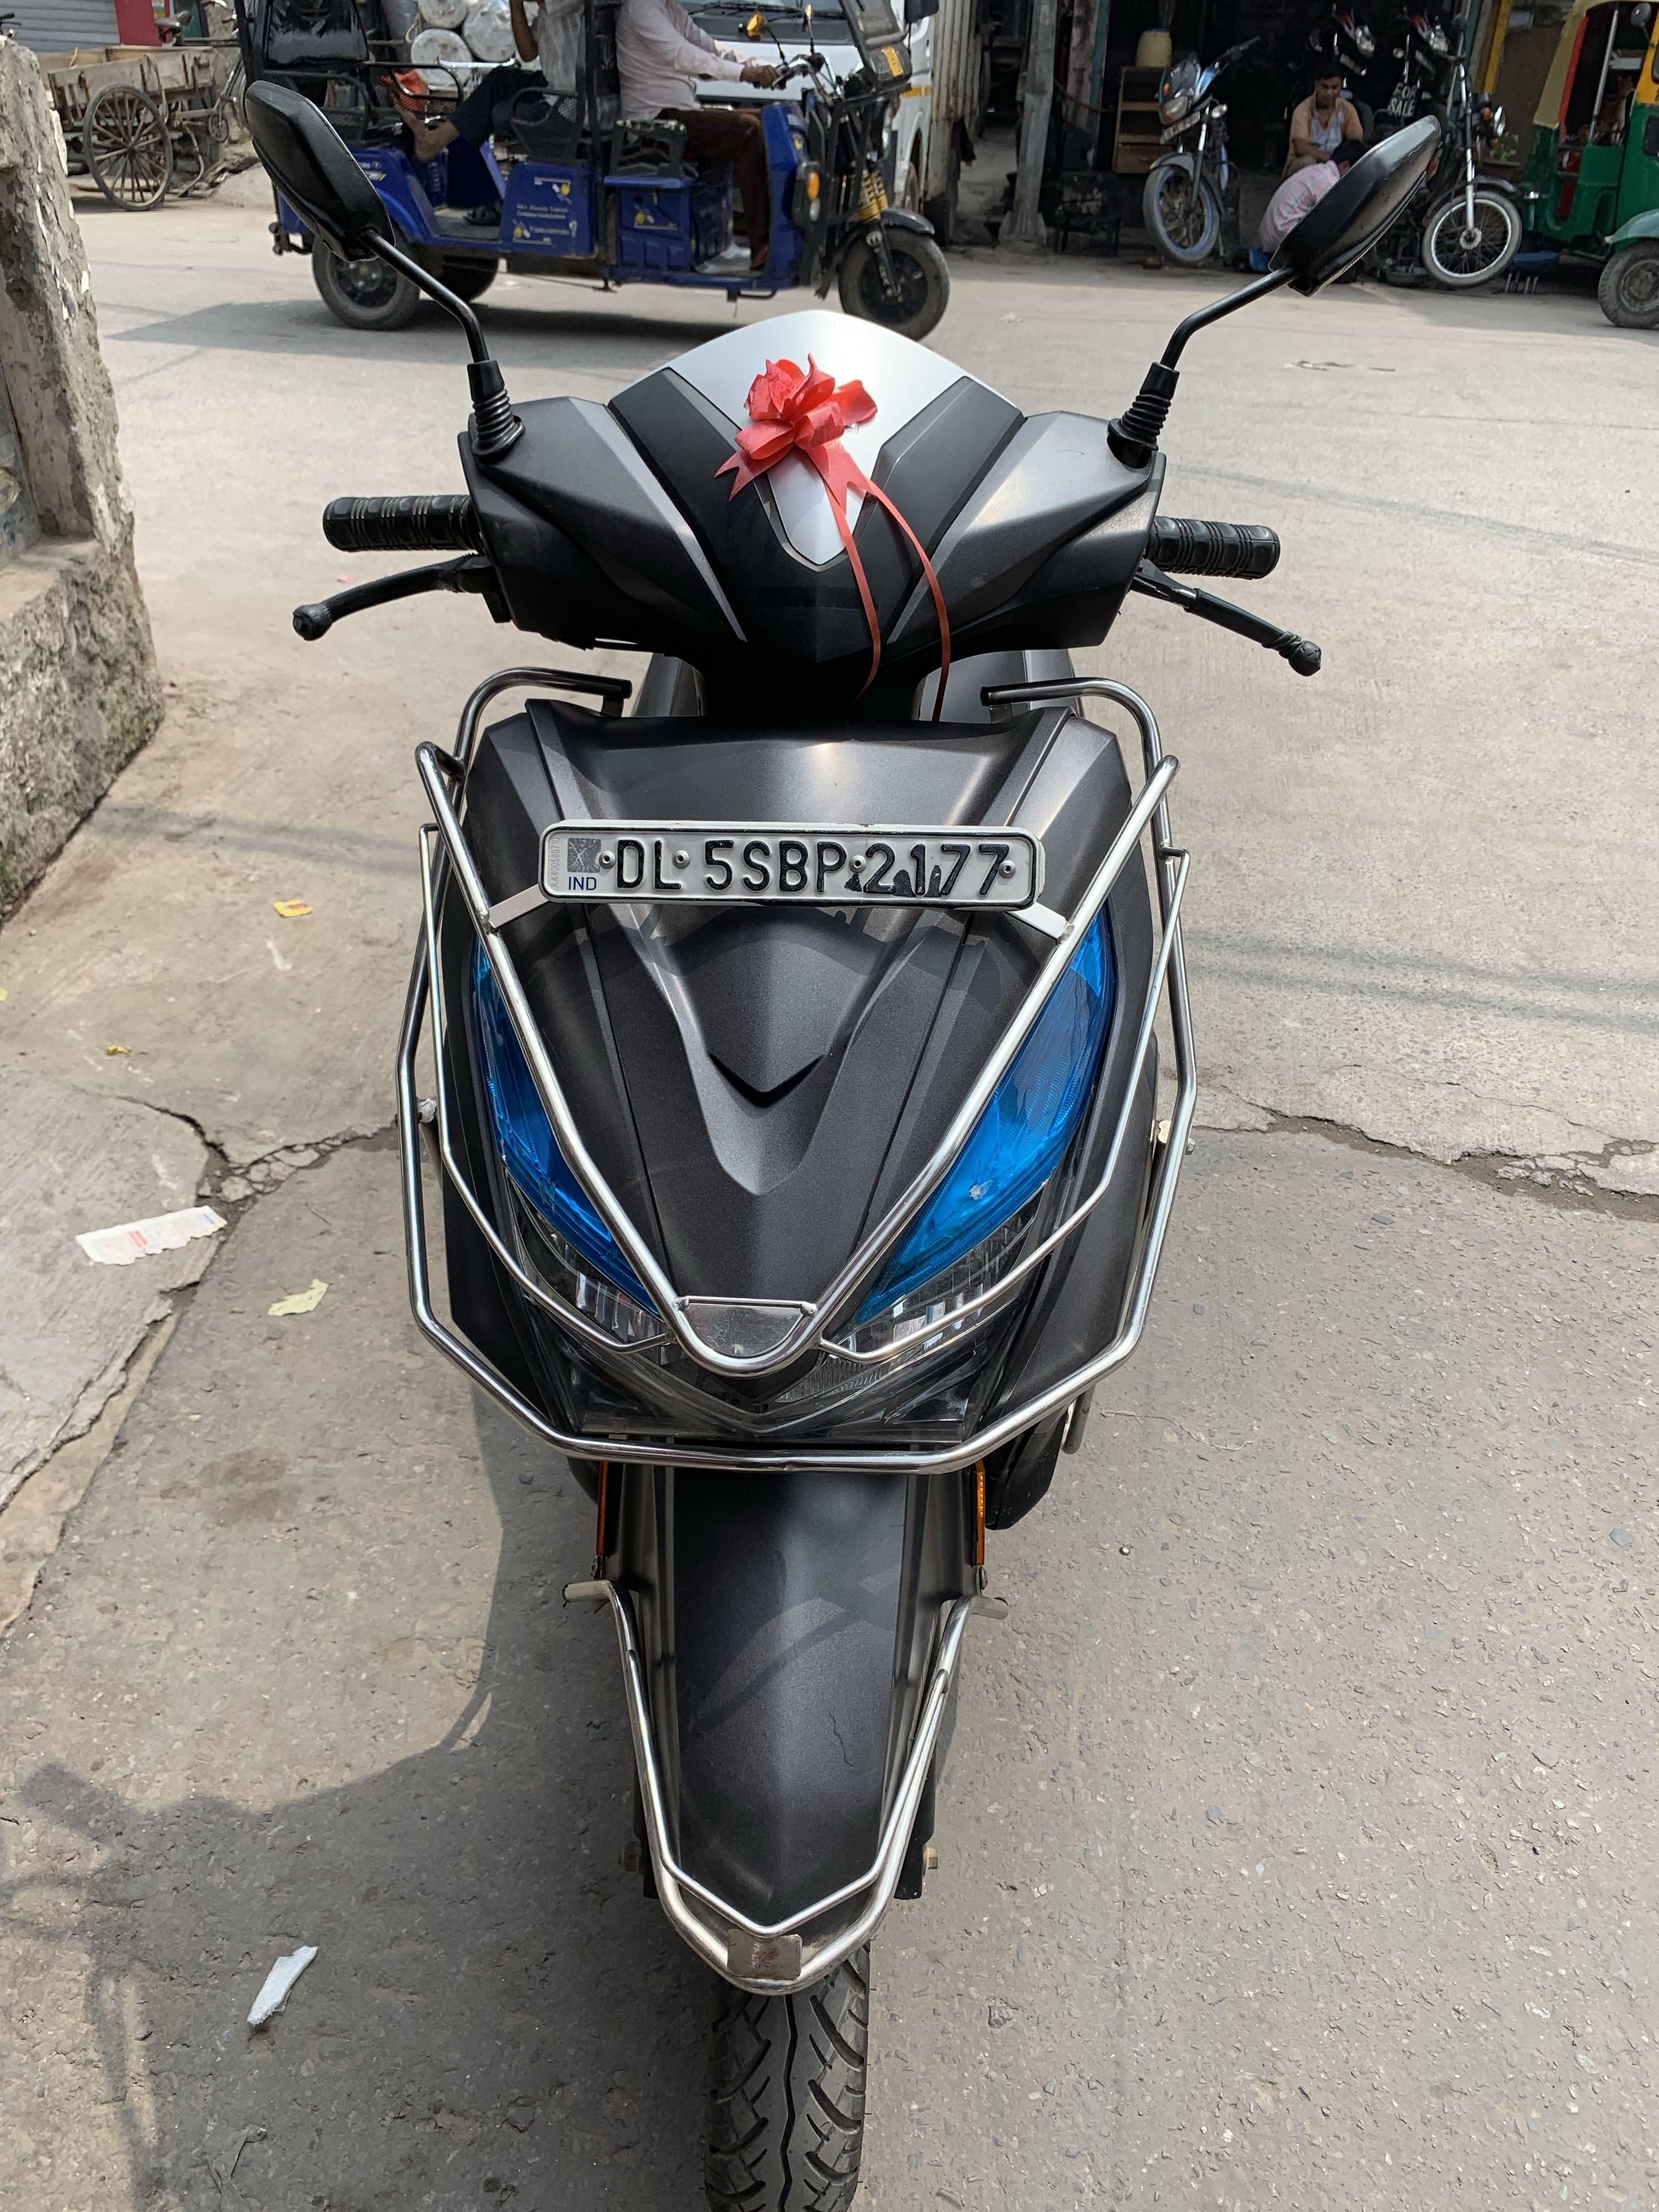 Honda Grazia Scooter For Sale In Delhi Id 1418029989 Droom